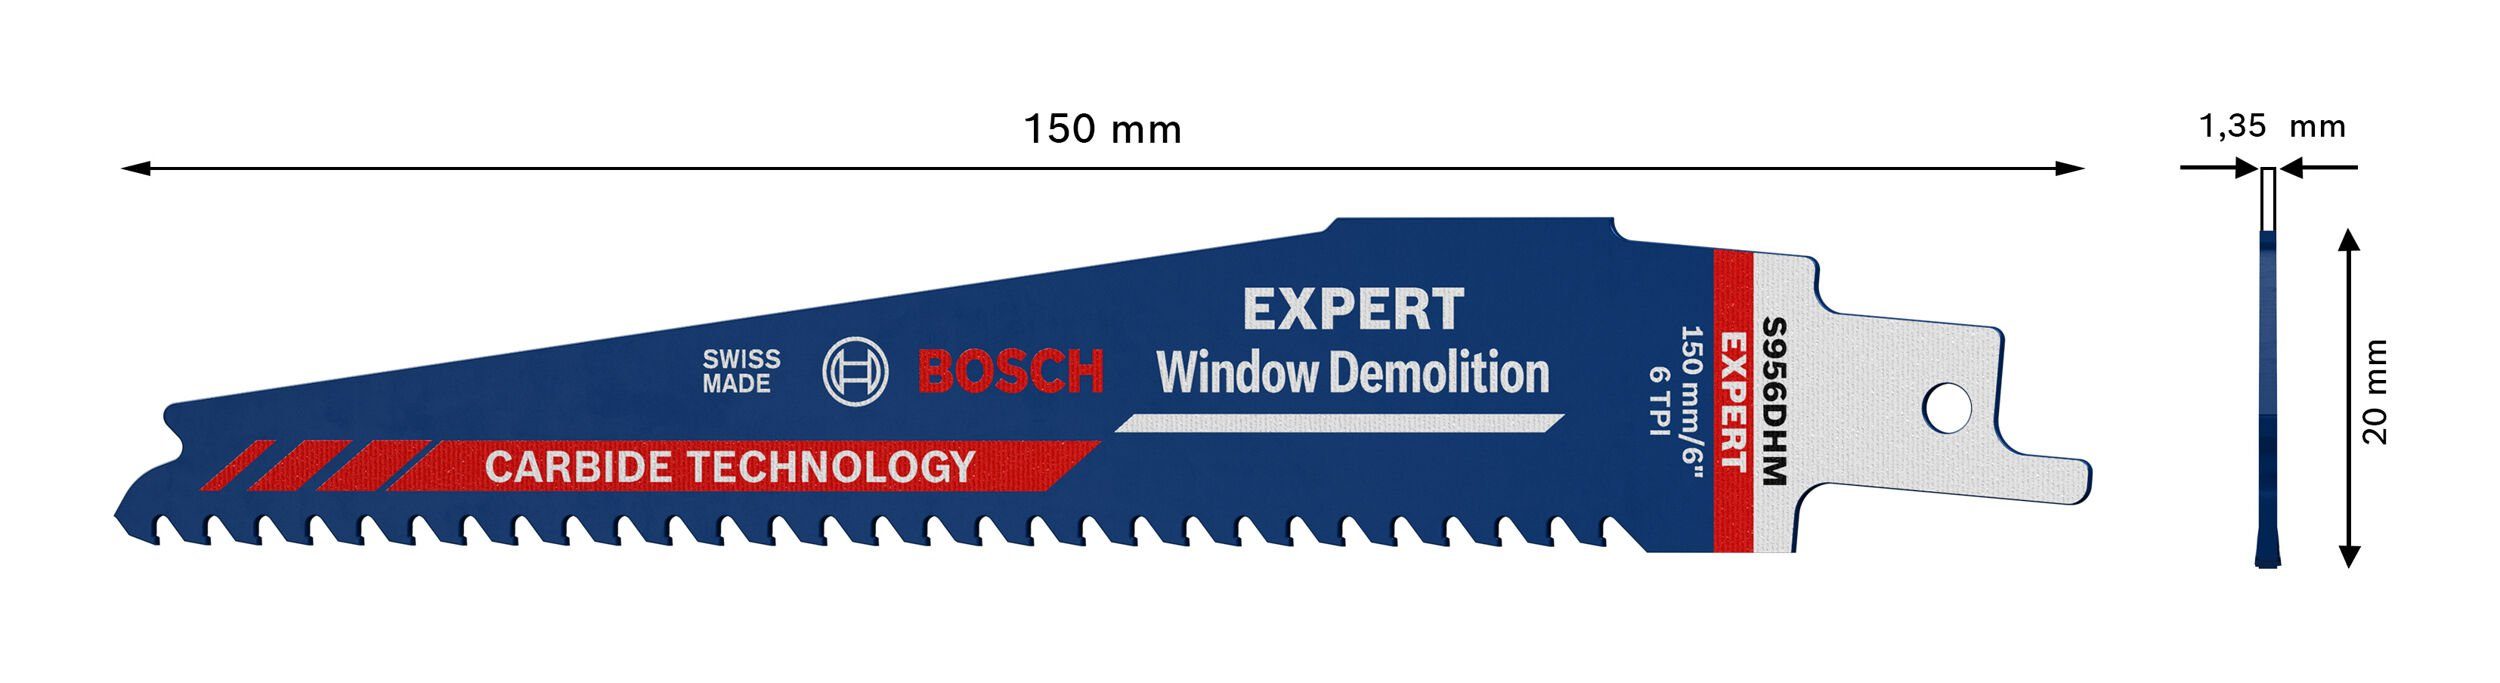 Endurance 956 S Demolition Expert Säbelsägeblatt Window DHM BOSCH for Window Demolition, Carbide Expert